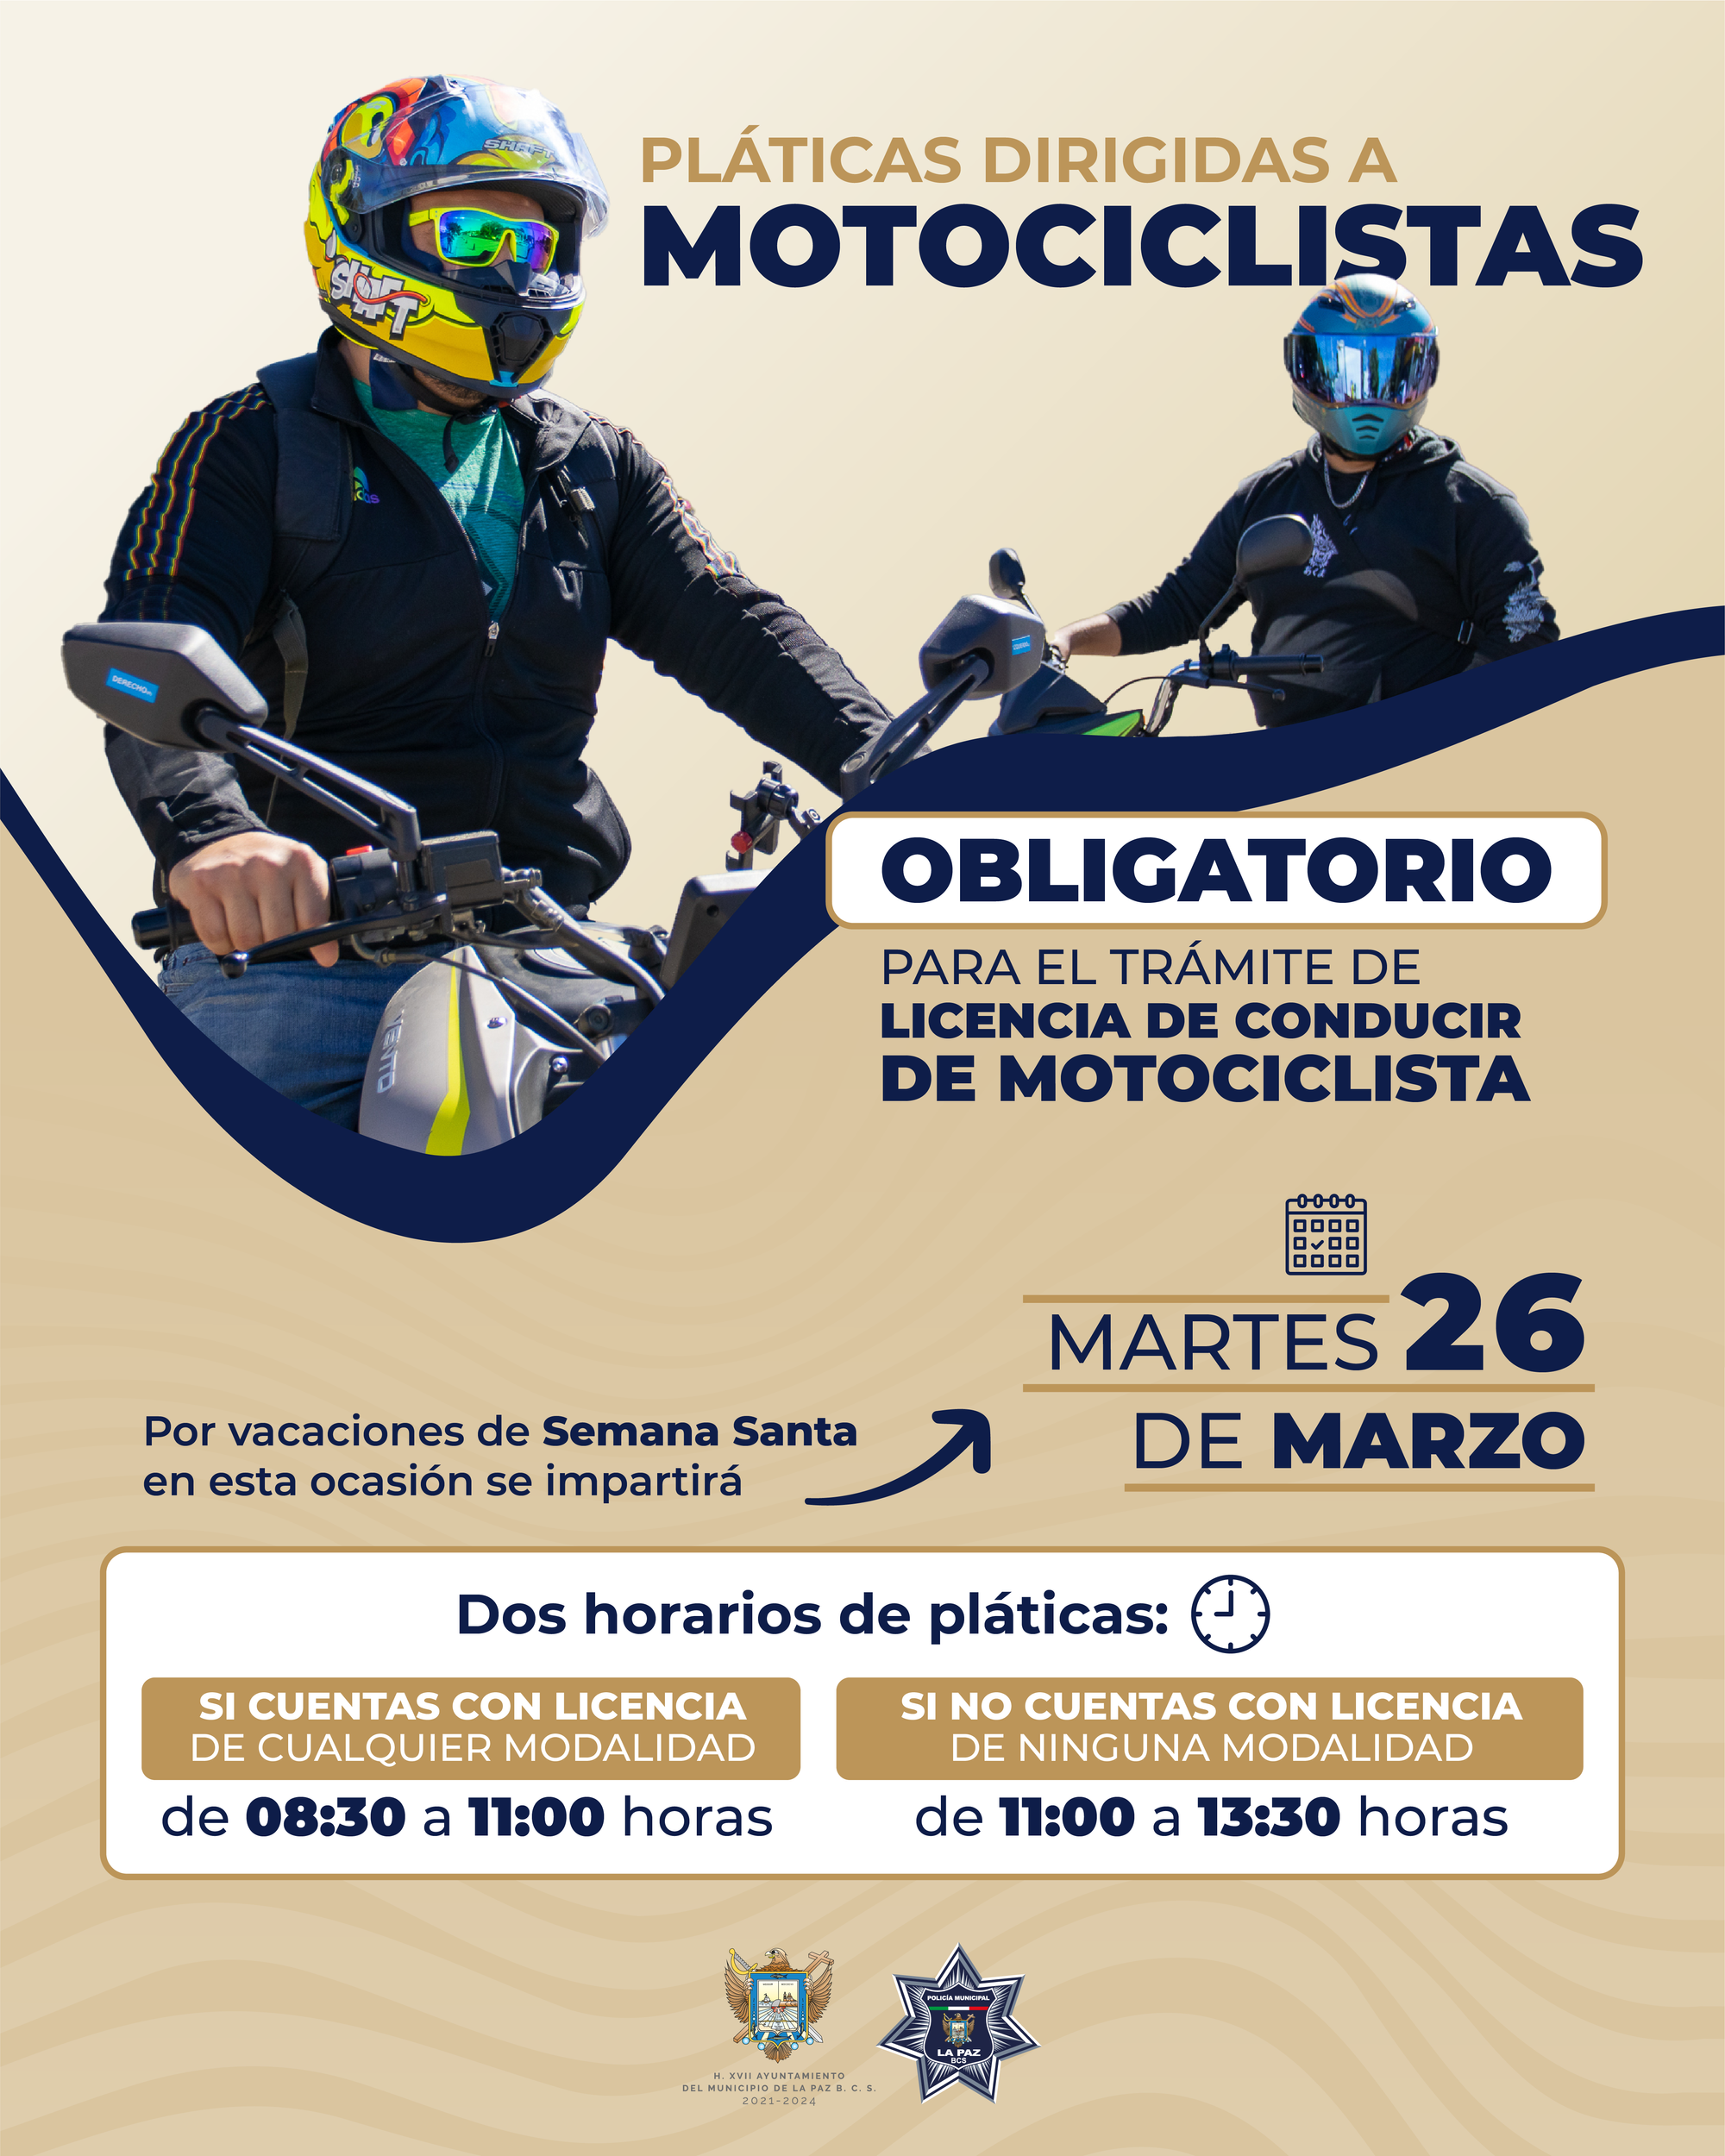 Si vas a adquirir una moto o ya cuentas con una, la Policía Municipal imparte cursos para la obtención de la licencia en la modalidad de motociclista.